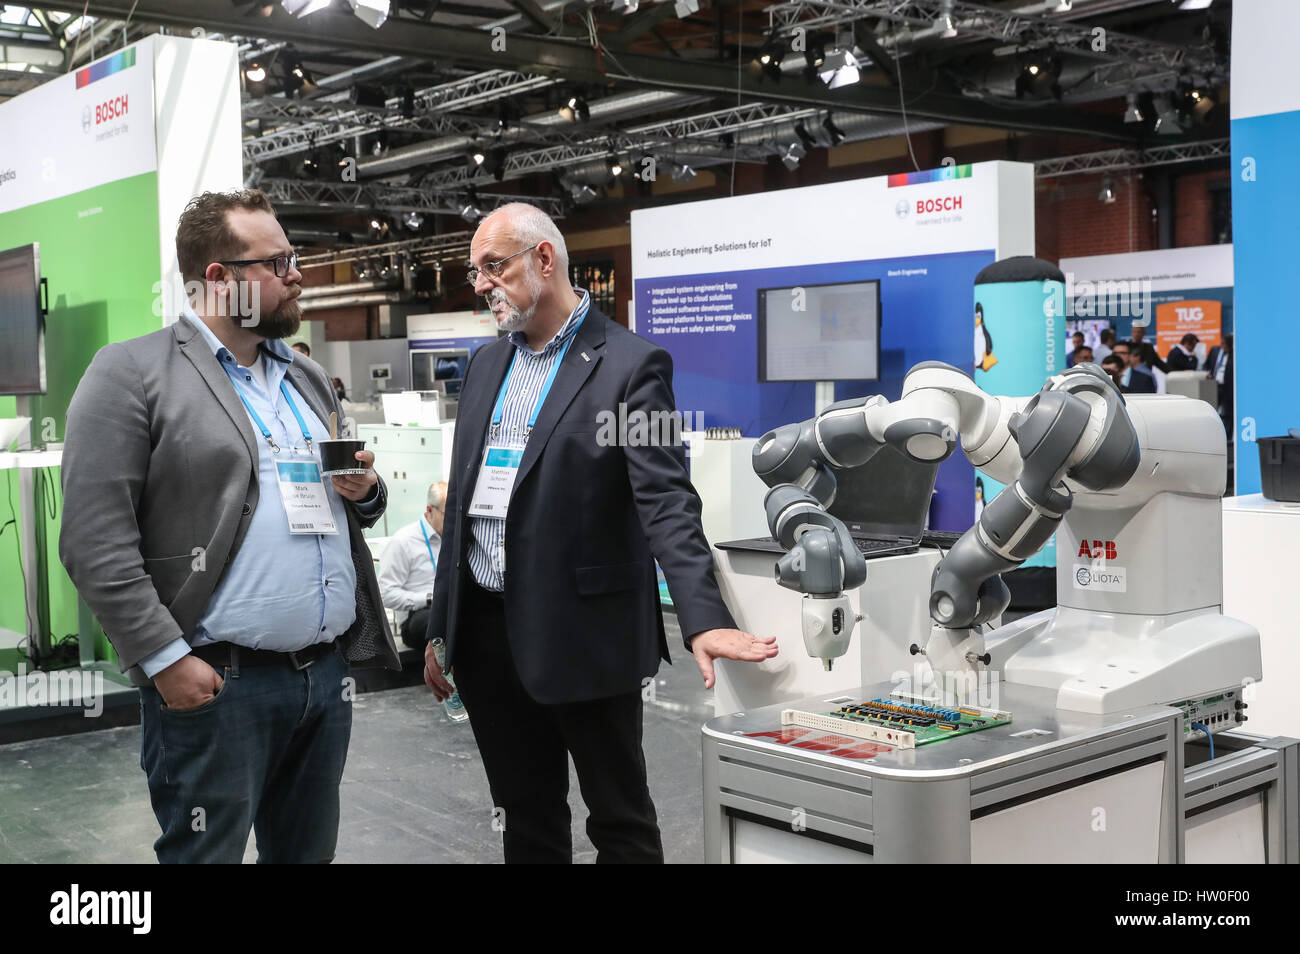 Berlín, Alemania. 15 Mar, 2017. Dos visitantes hablar delante de un robot  durante el Bosch ConnectedWorld 2017 en Berlín, capital de Alemania, el 15  de marzo de 2017. El Bosch ConnectedWorld 2017,